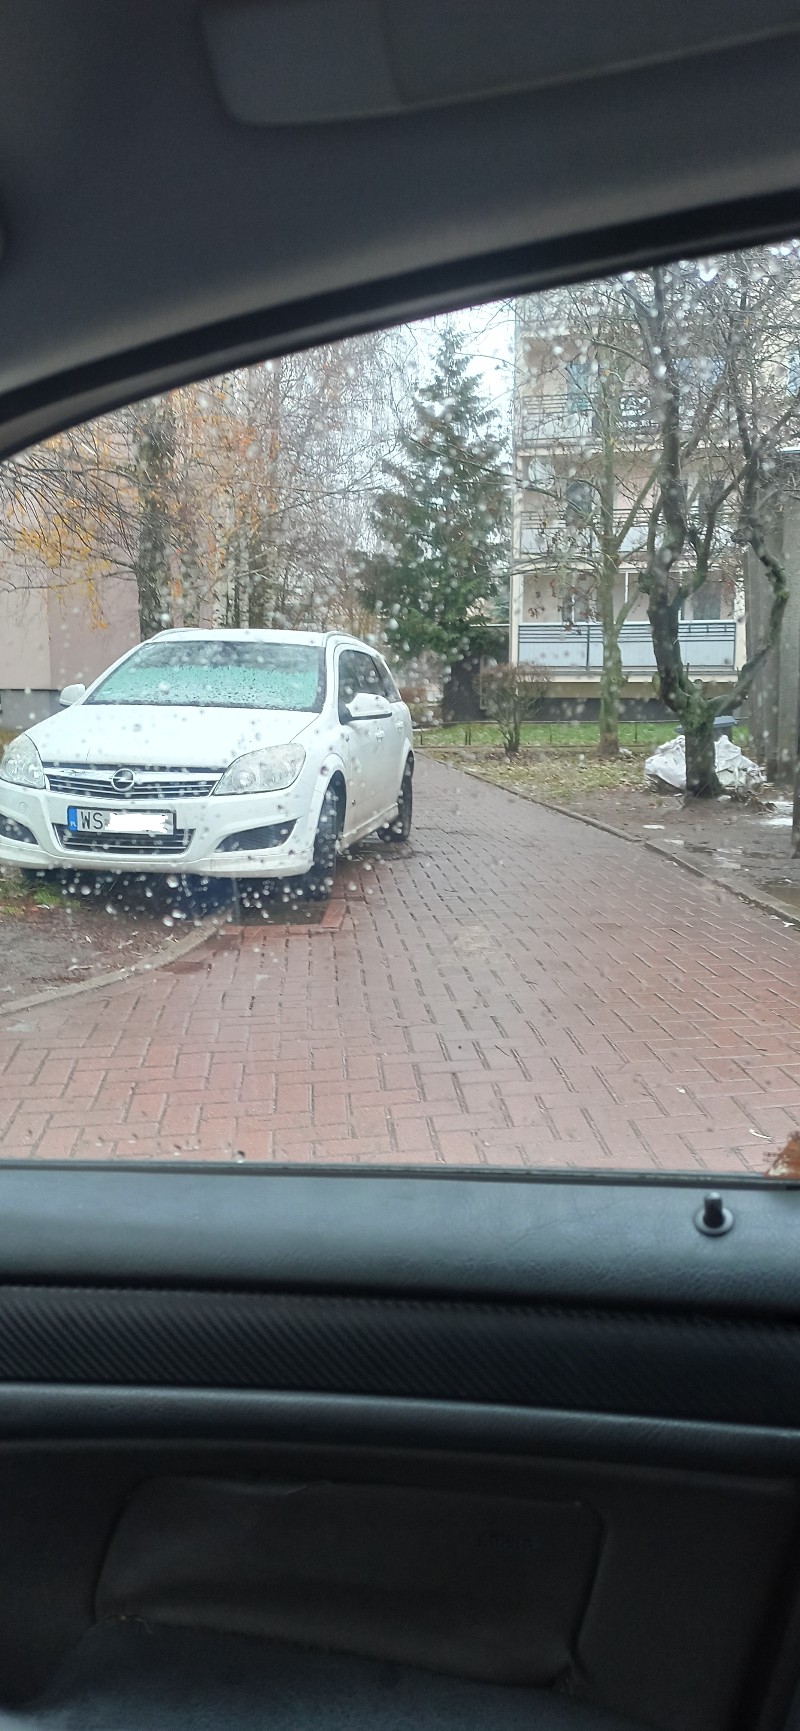 Mistrz parkowania na ul. Niepodległości w Siedlcach. 